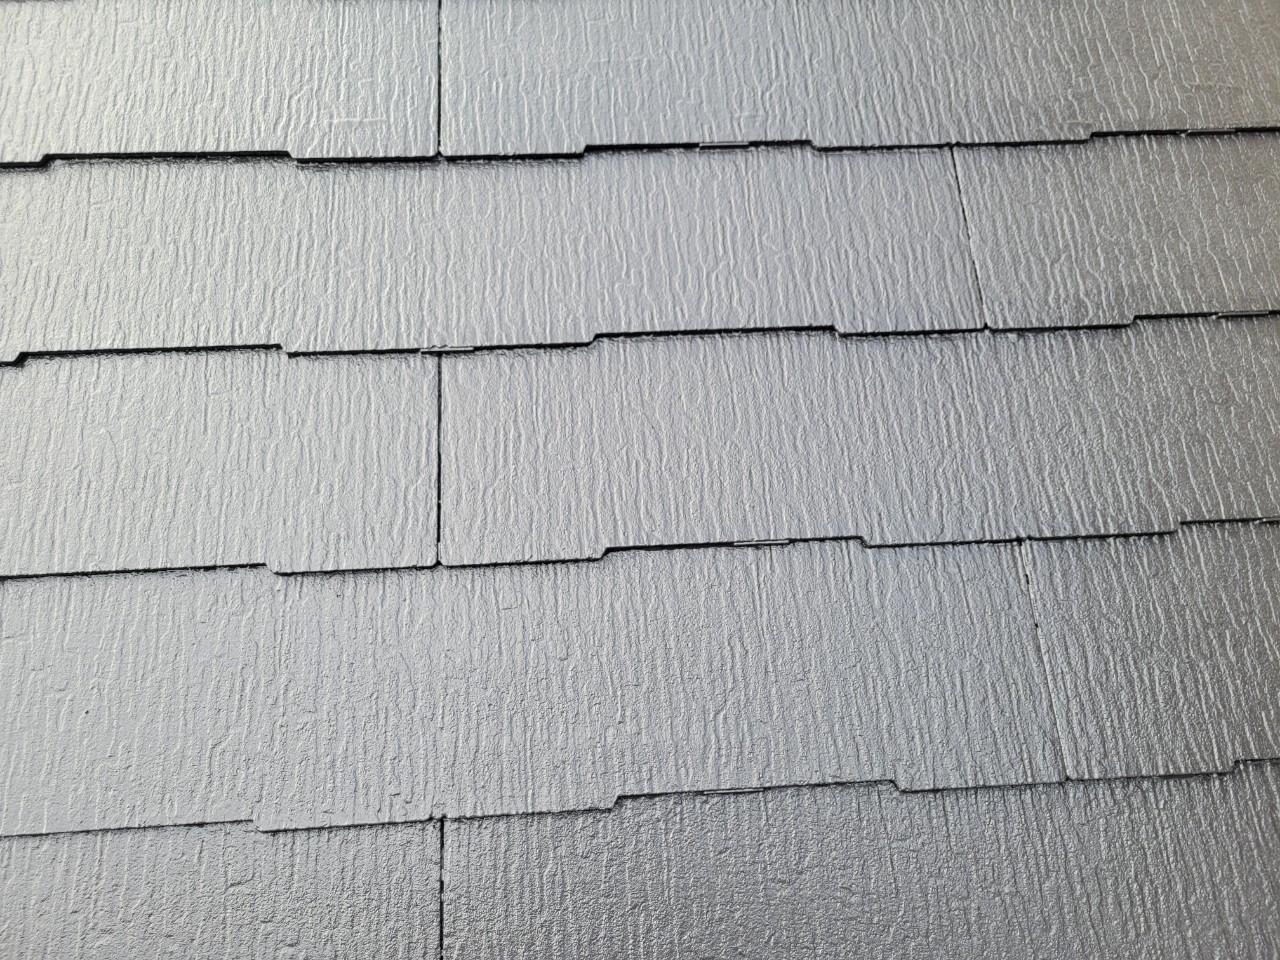 福岡県糟屋郡新宮町のK様邸で色褪せして汚れが付着しているガレージの屋根塗装工事を行いました。11/10完成です。【HPより】